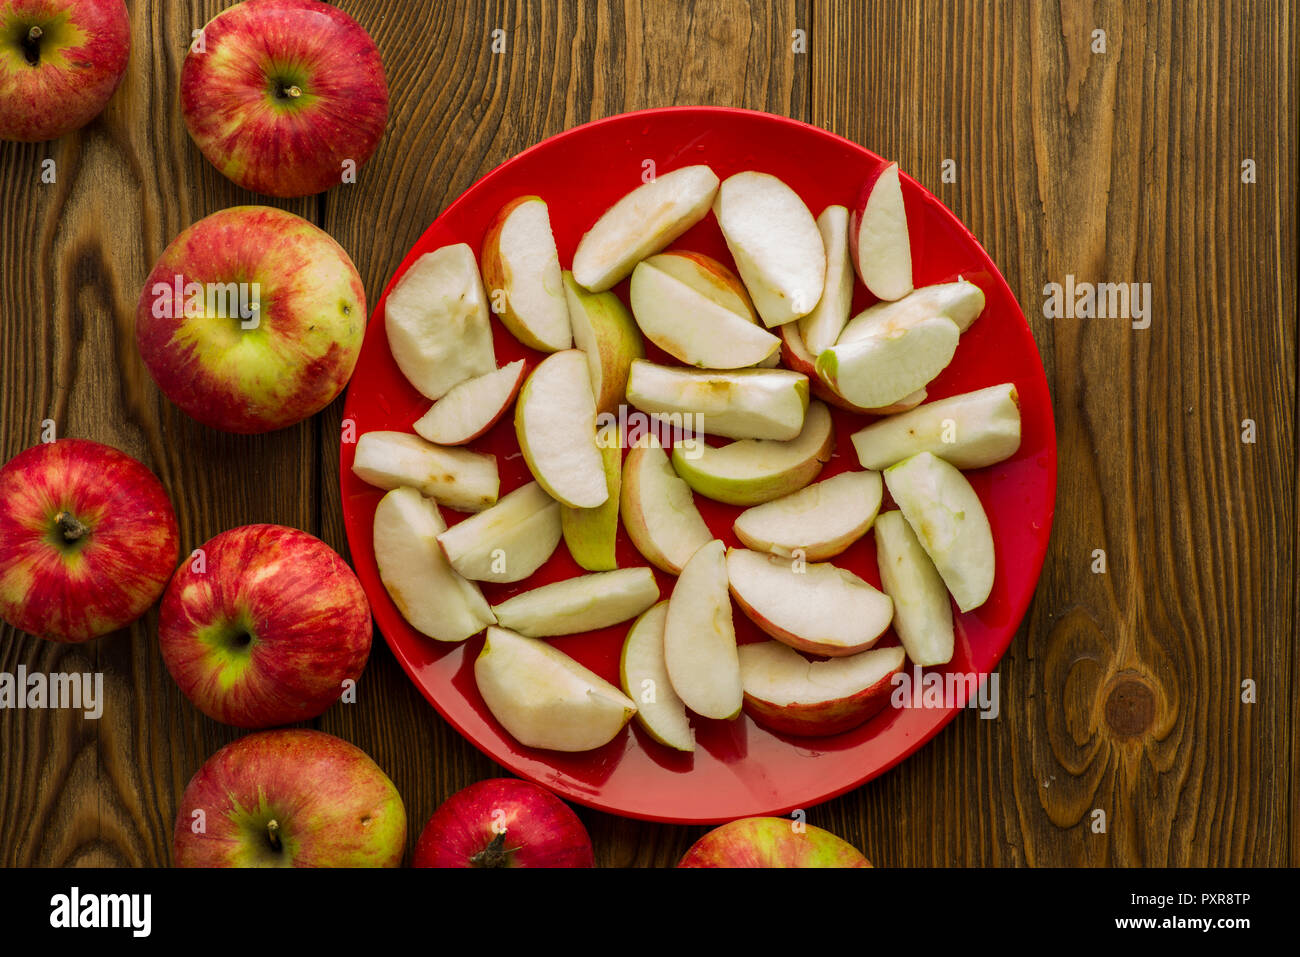 Reif in Scheiben geschnittenen Äpfel auf einer Tabelle in einer Platte Stockfoto